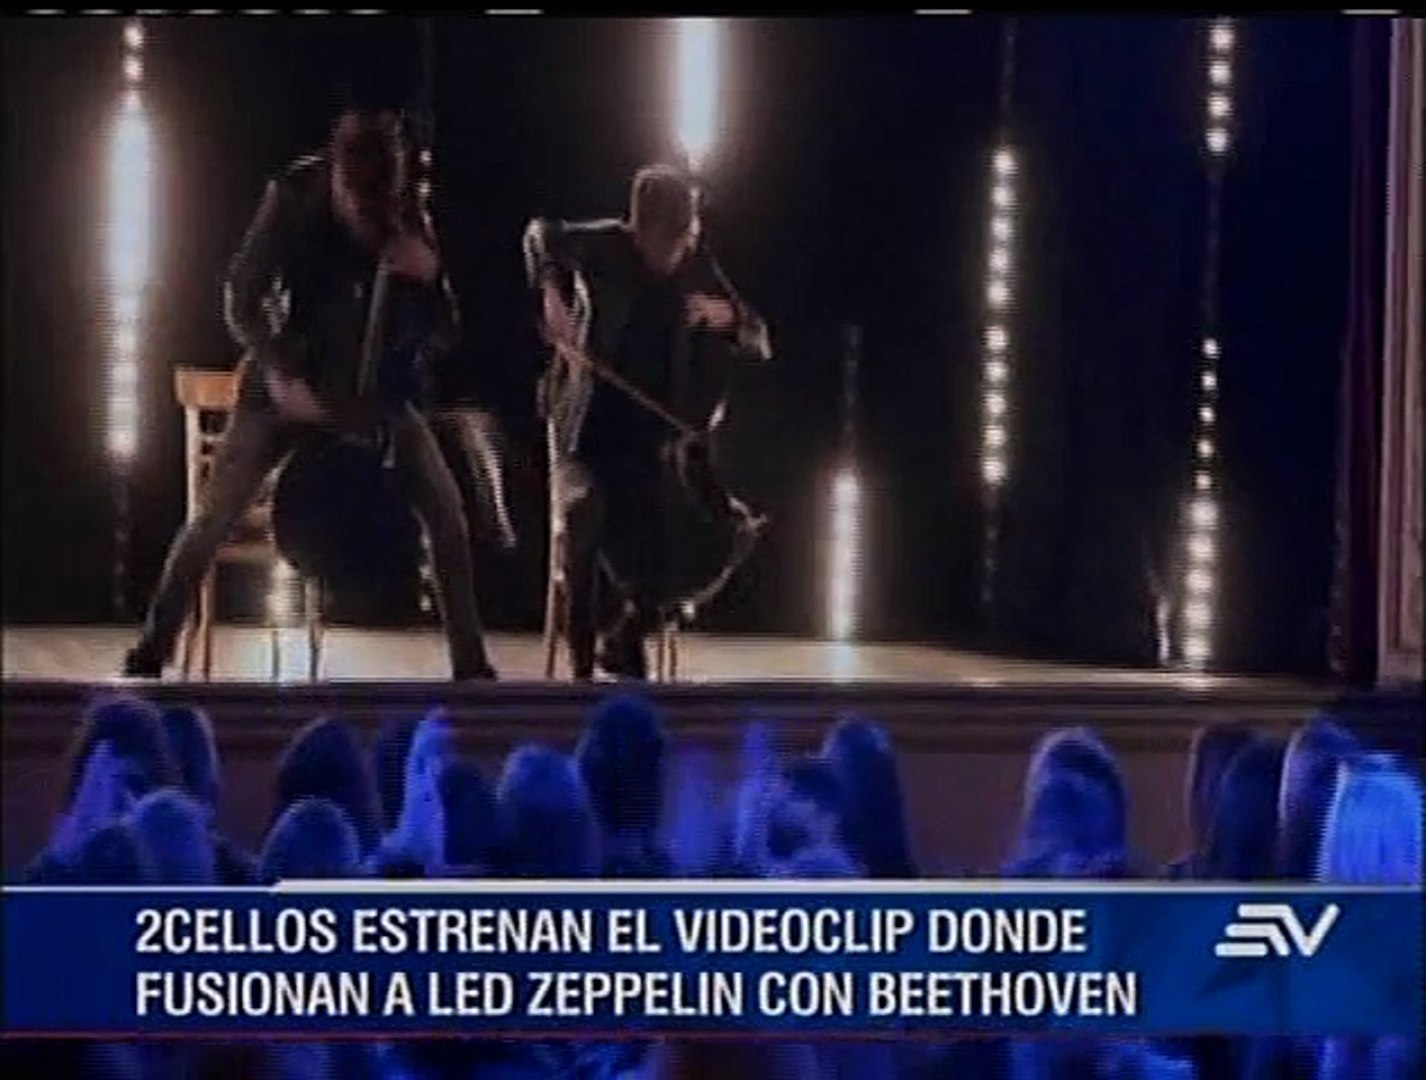 2Cellos fusionan a Led Zeppelin con Beethoven - Vídeo Dailymotion